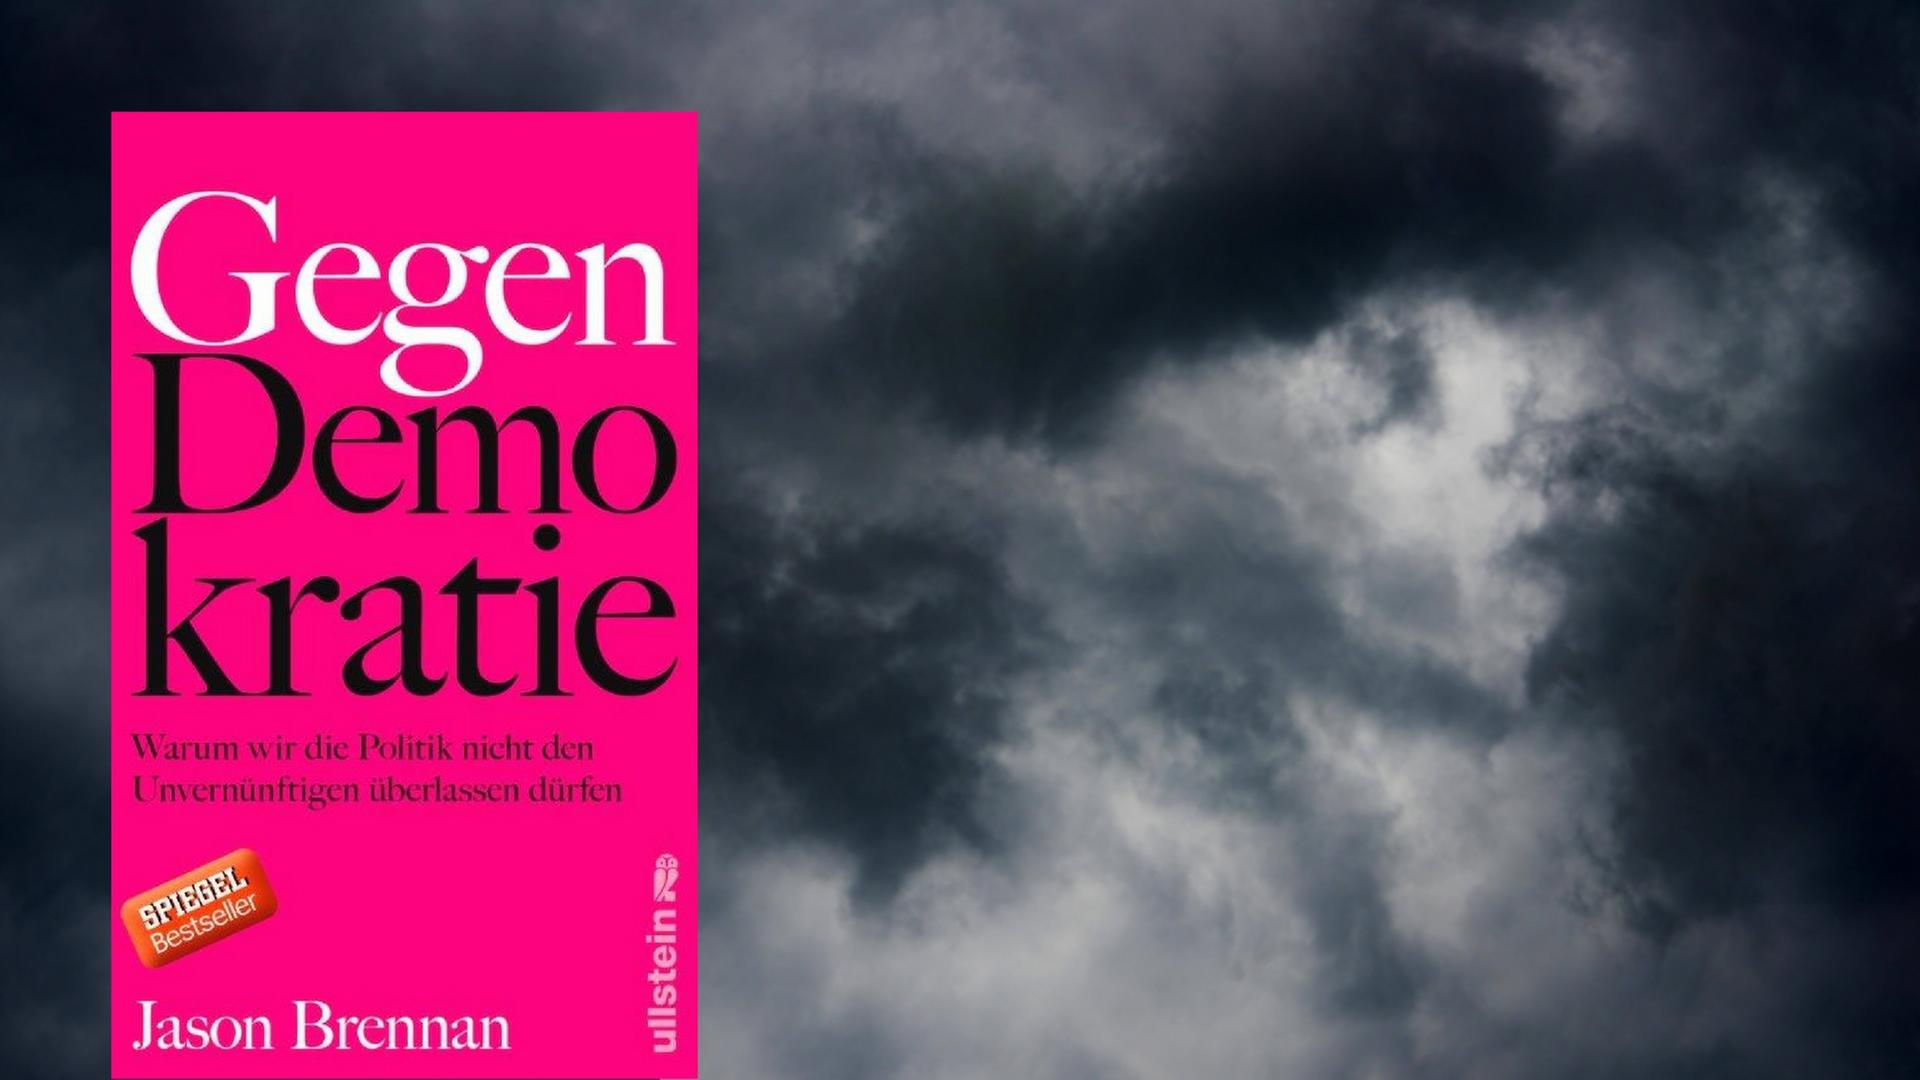 Im Vordergrund das Cover zu Jason Brennans "Gegen Demokratie", im Hintergrund dunkle Wolken.